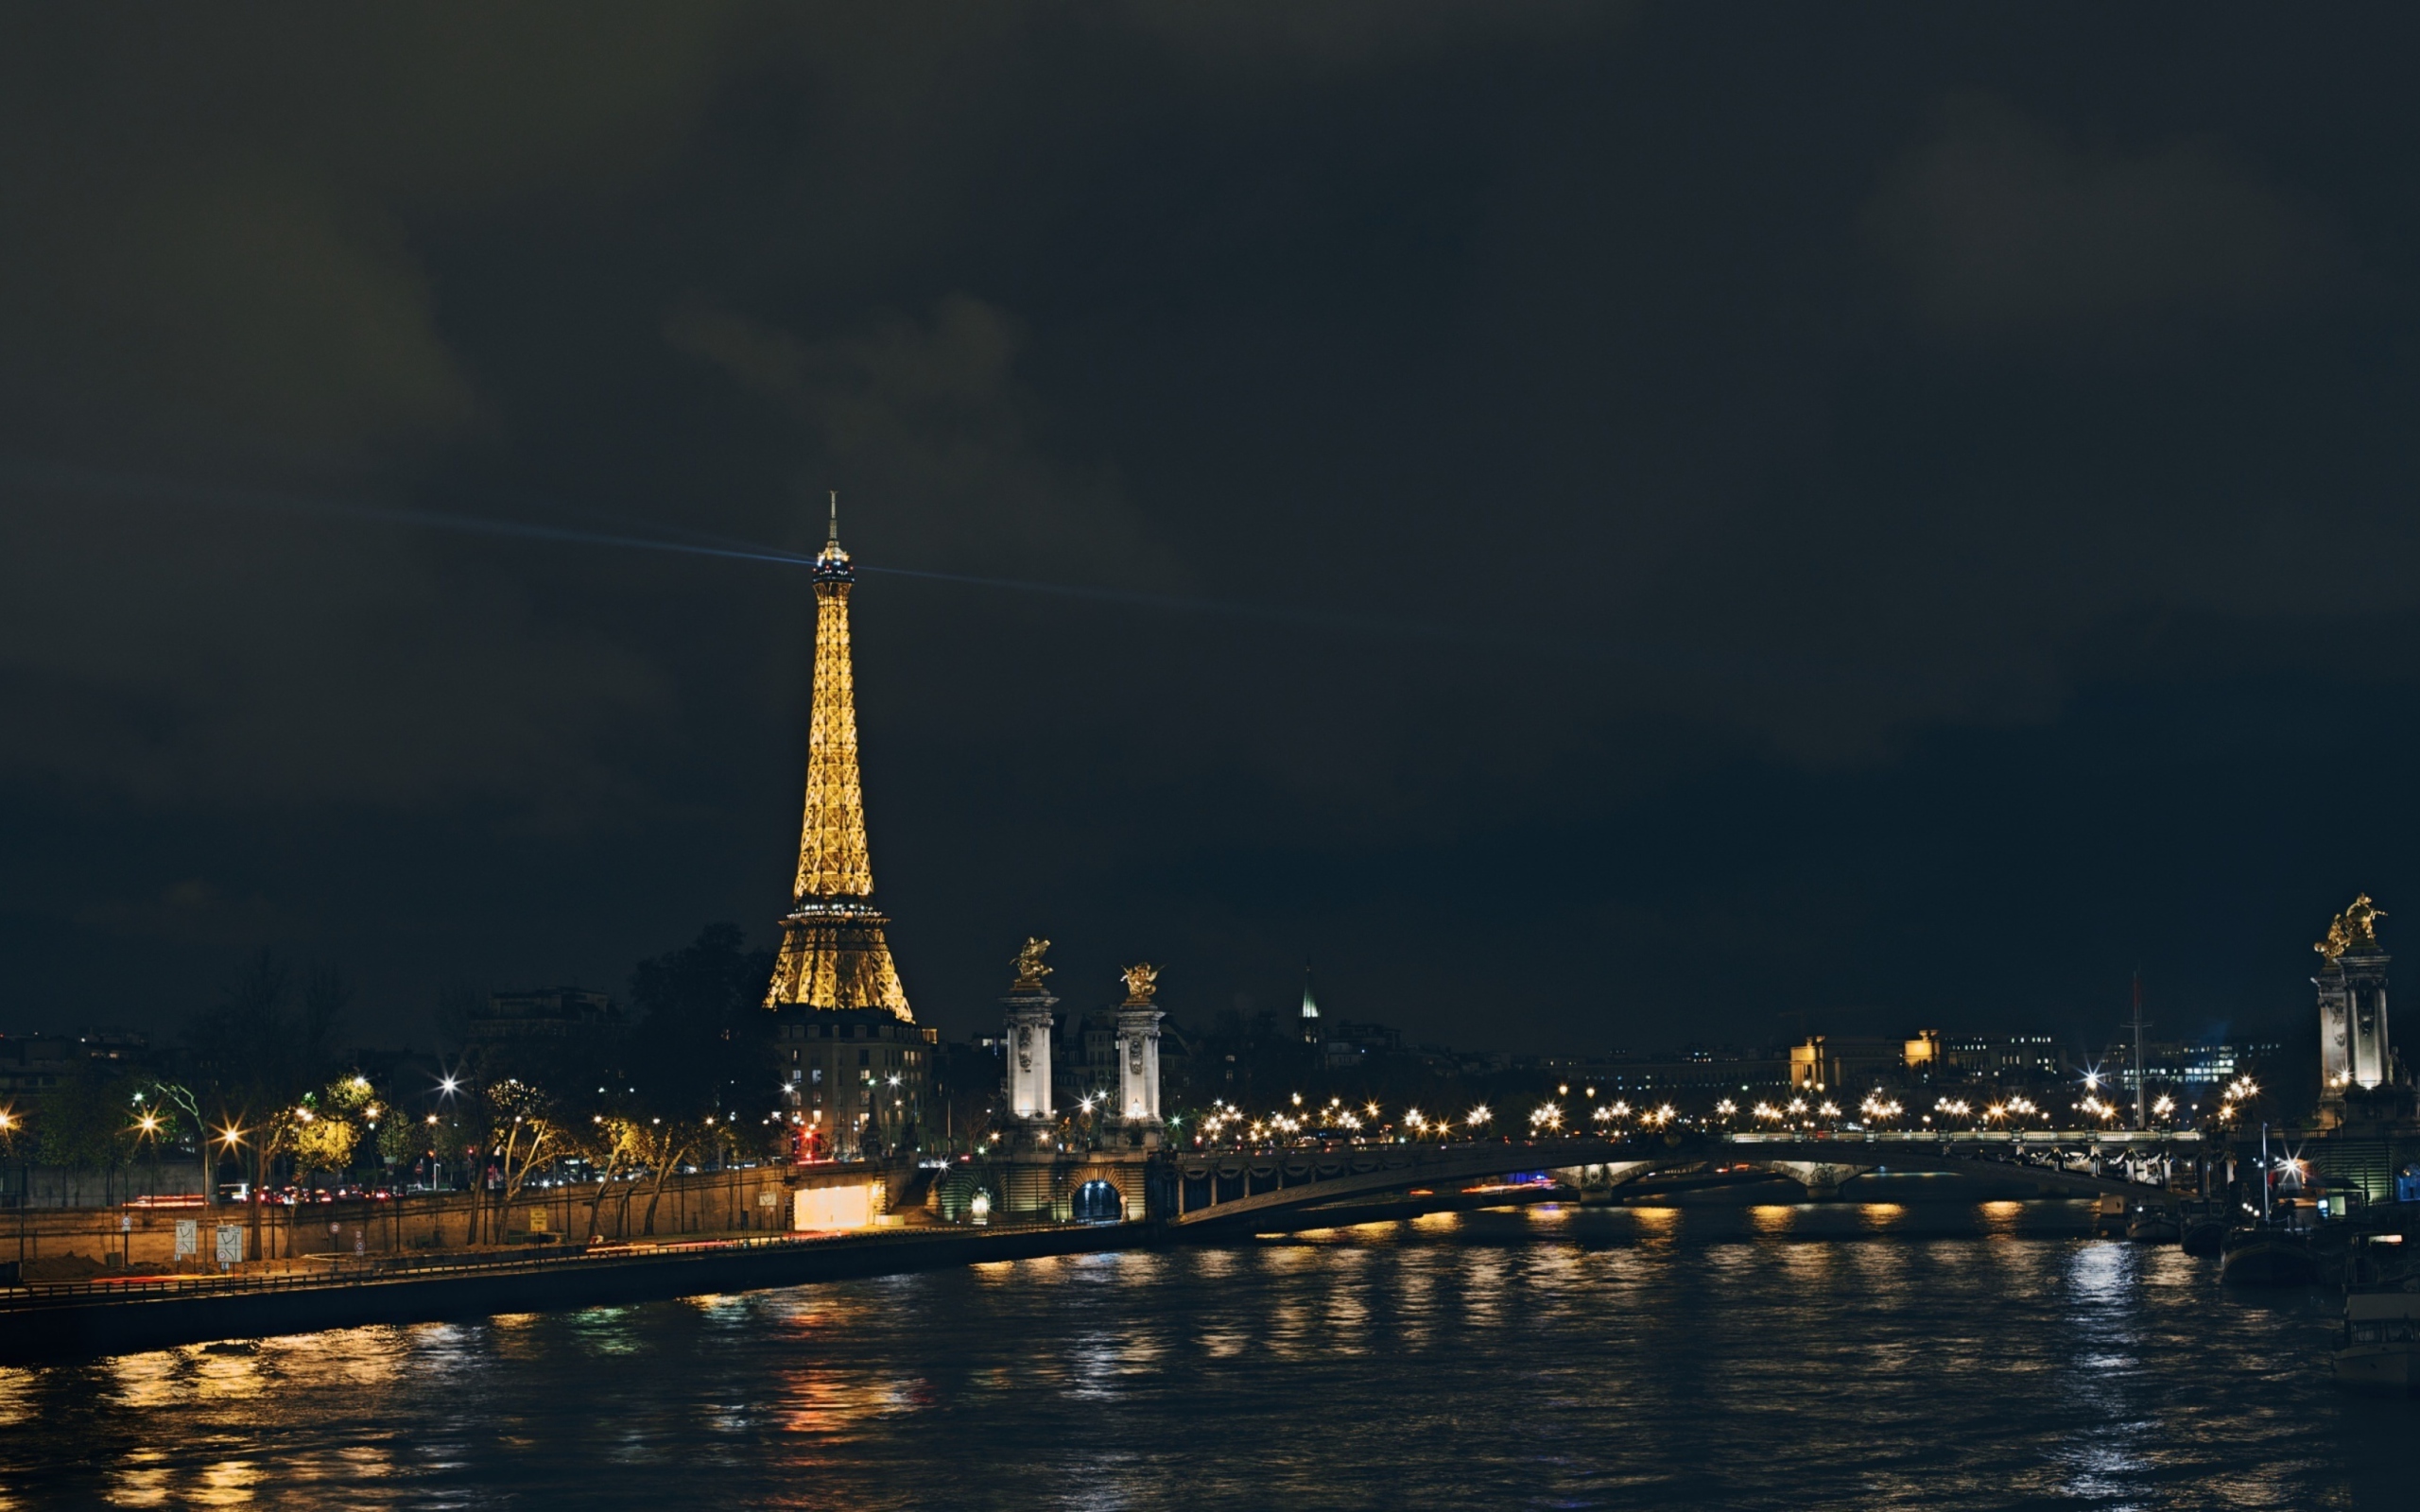 Das Eiffel Tower In Paris France Wallpaper 2560x1600